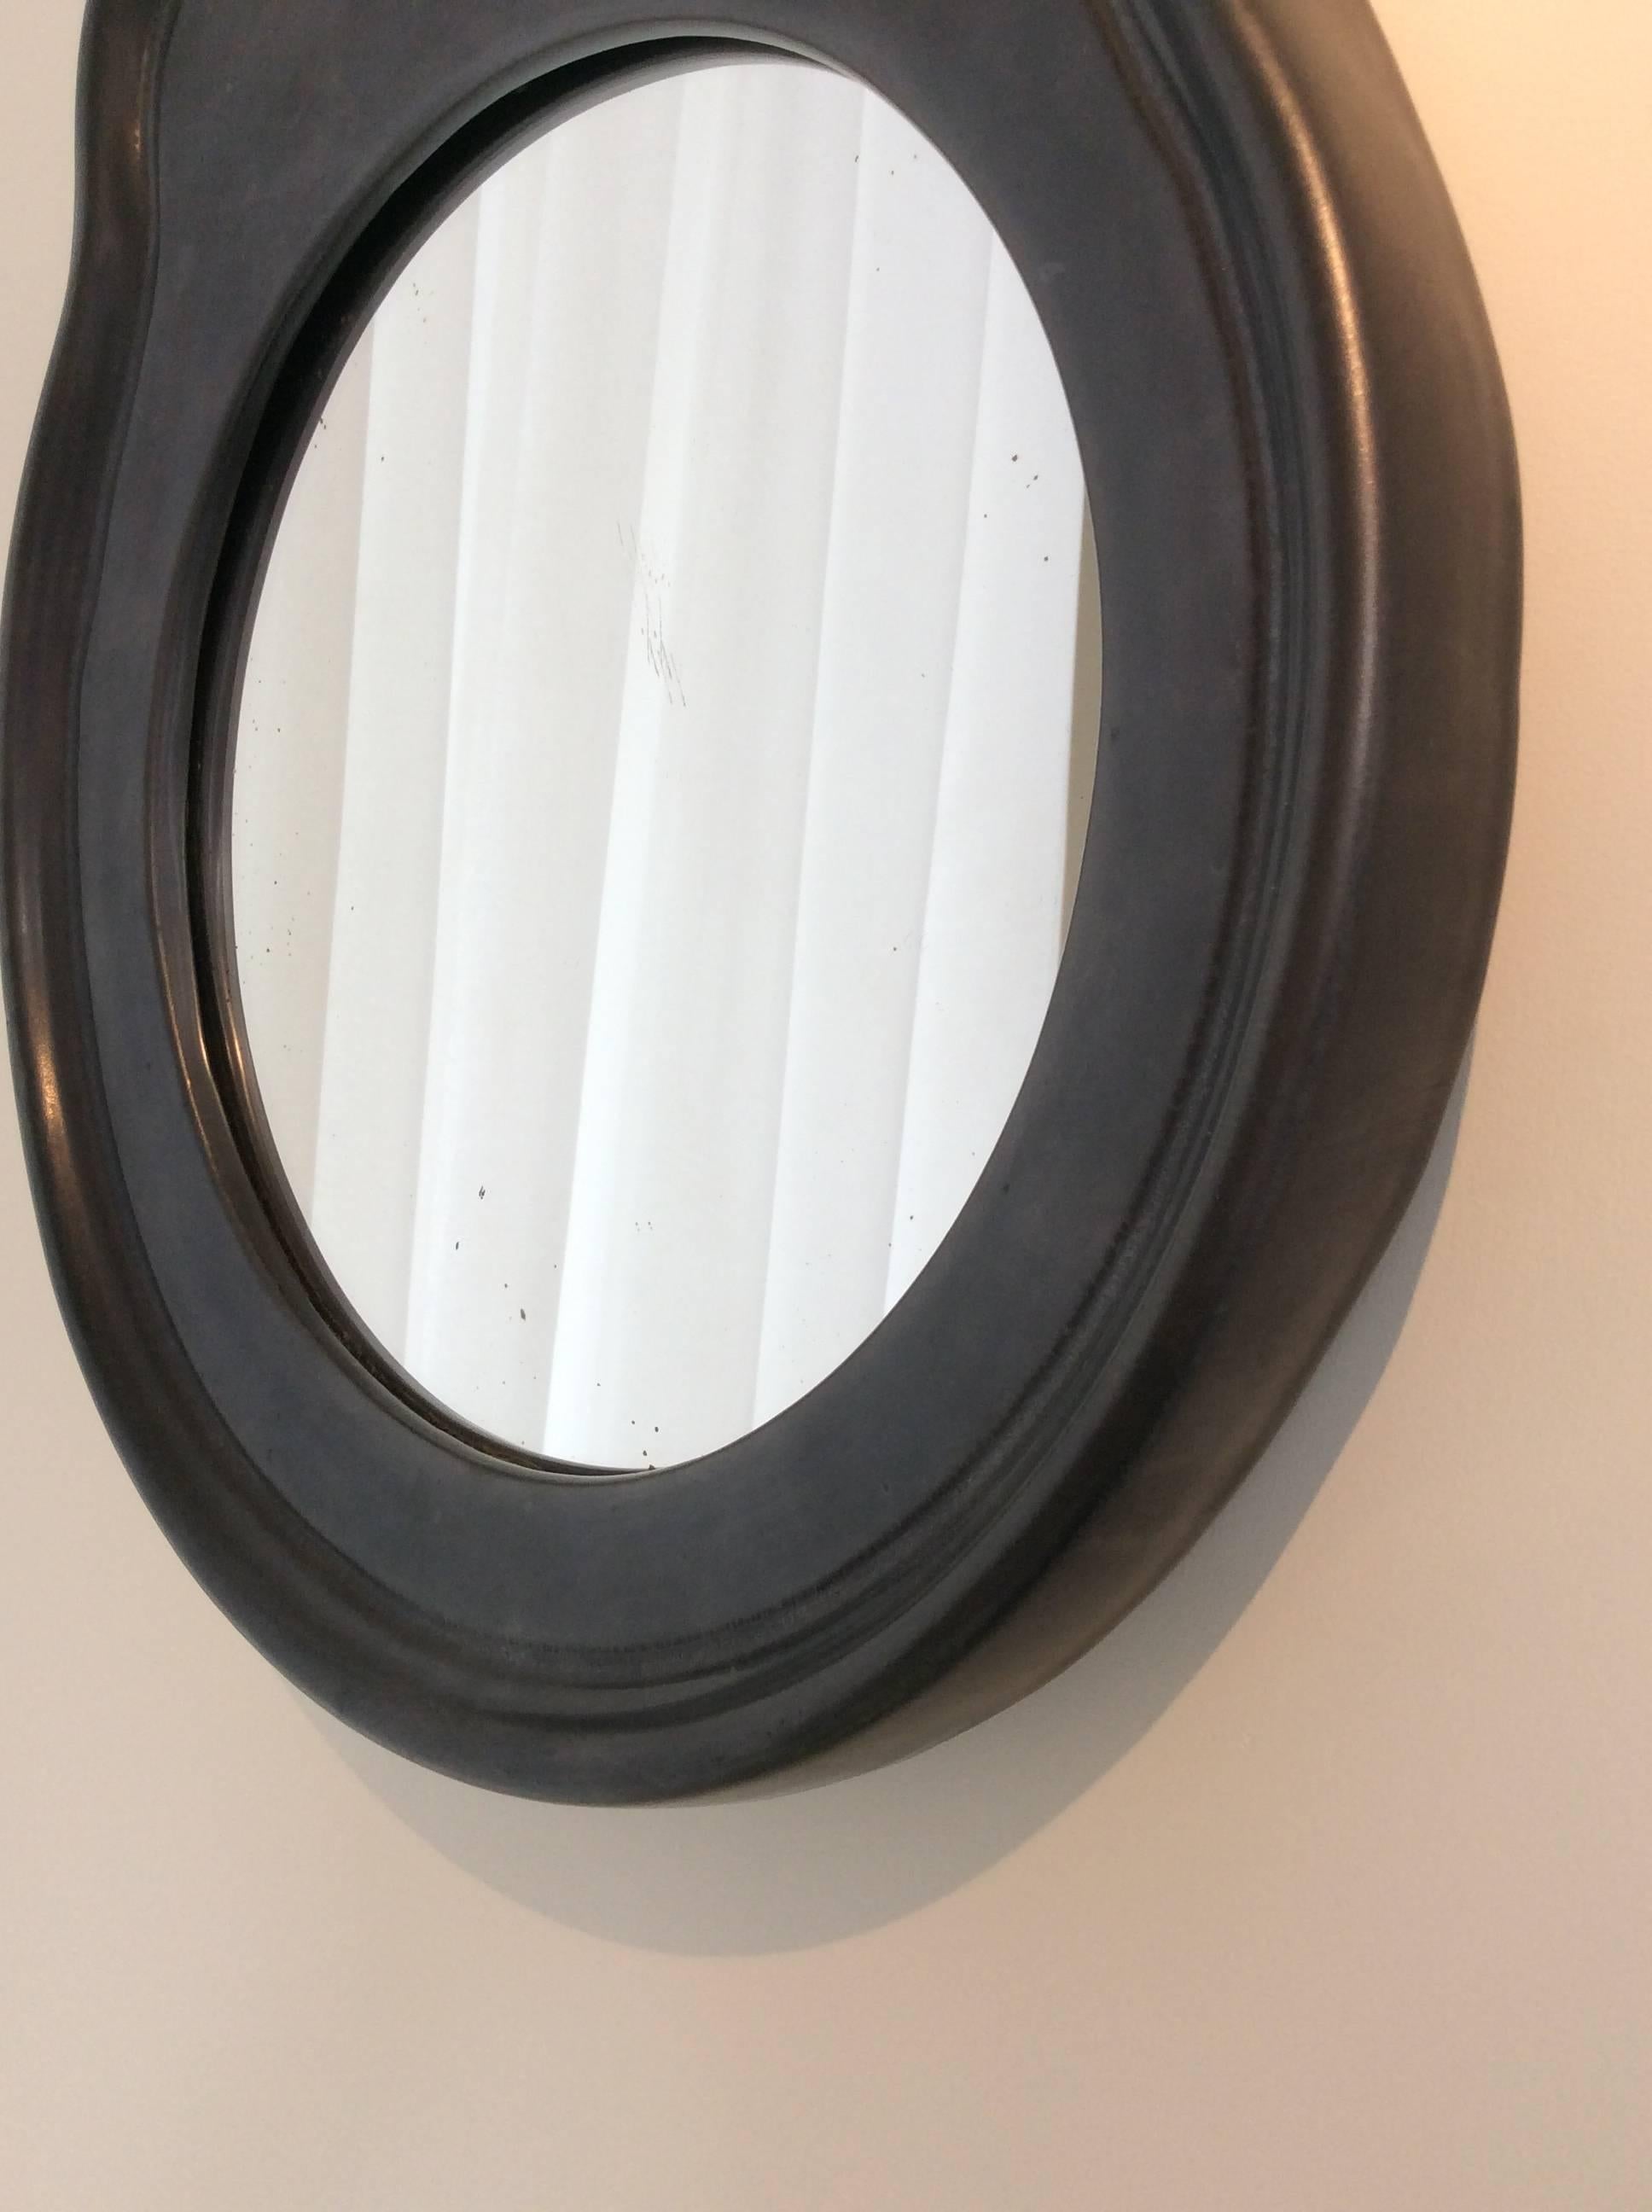 Black ceramic mirror, circa 1950. France. 
Good original condition. 
Measures: H 41 cm, W 34 cm, D 3,5 cm.